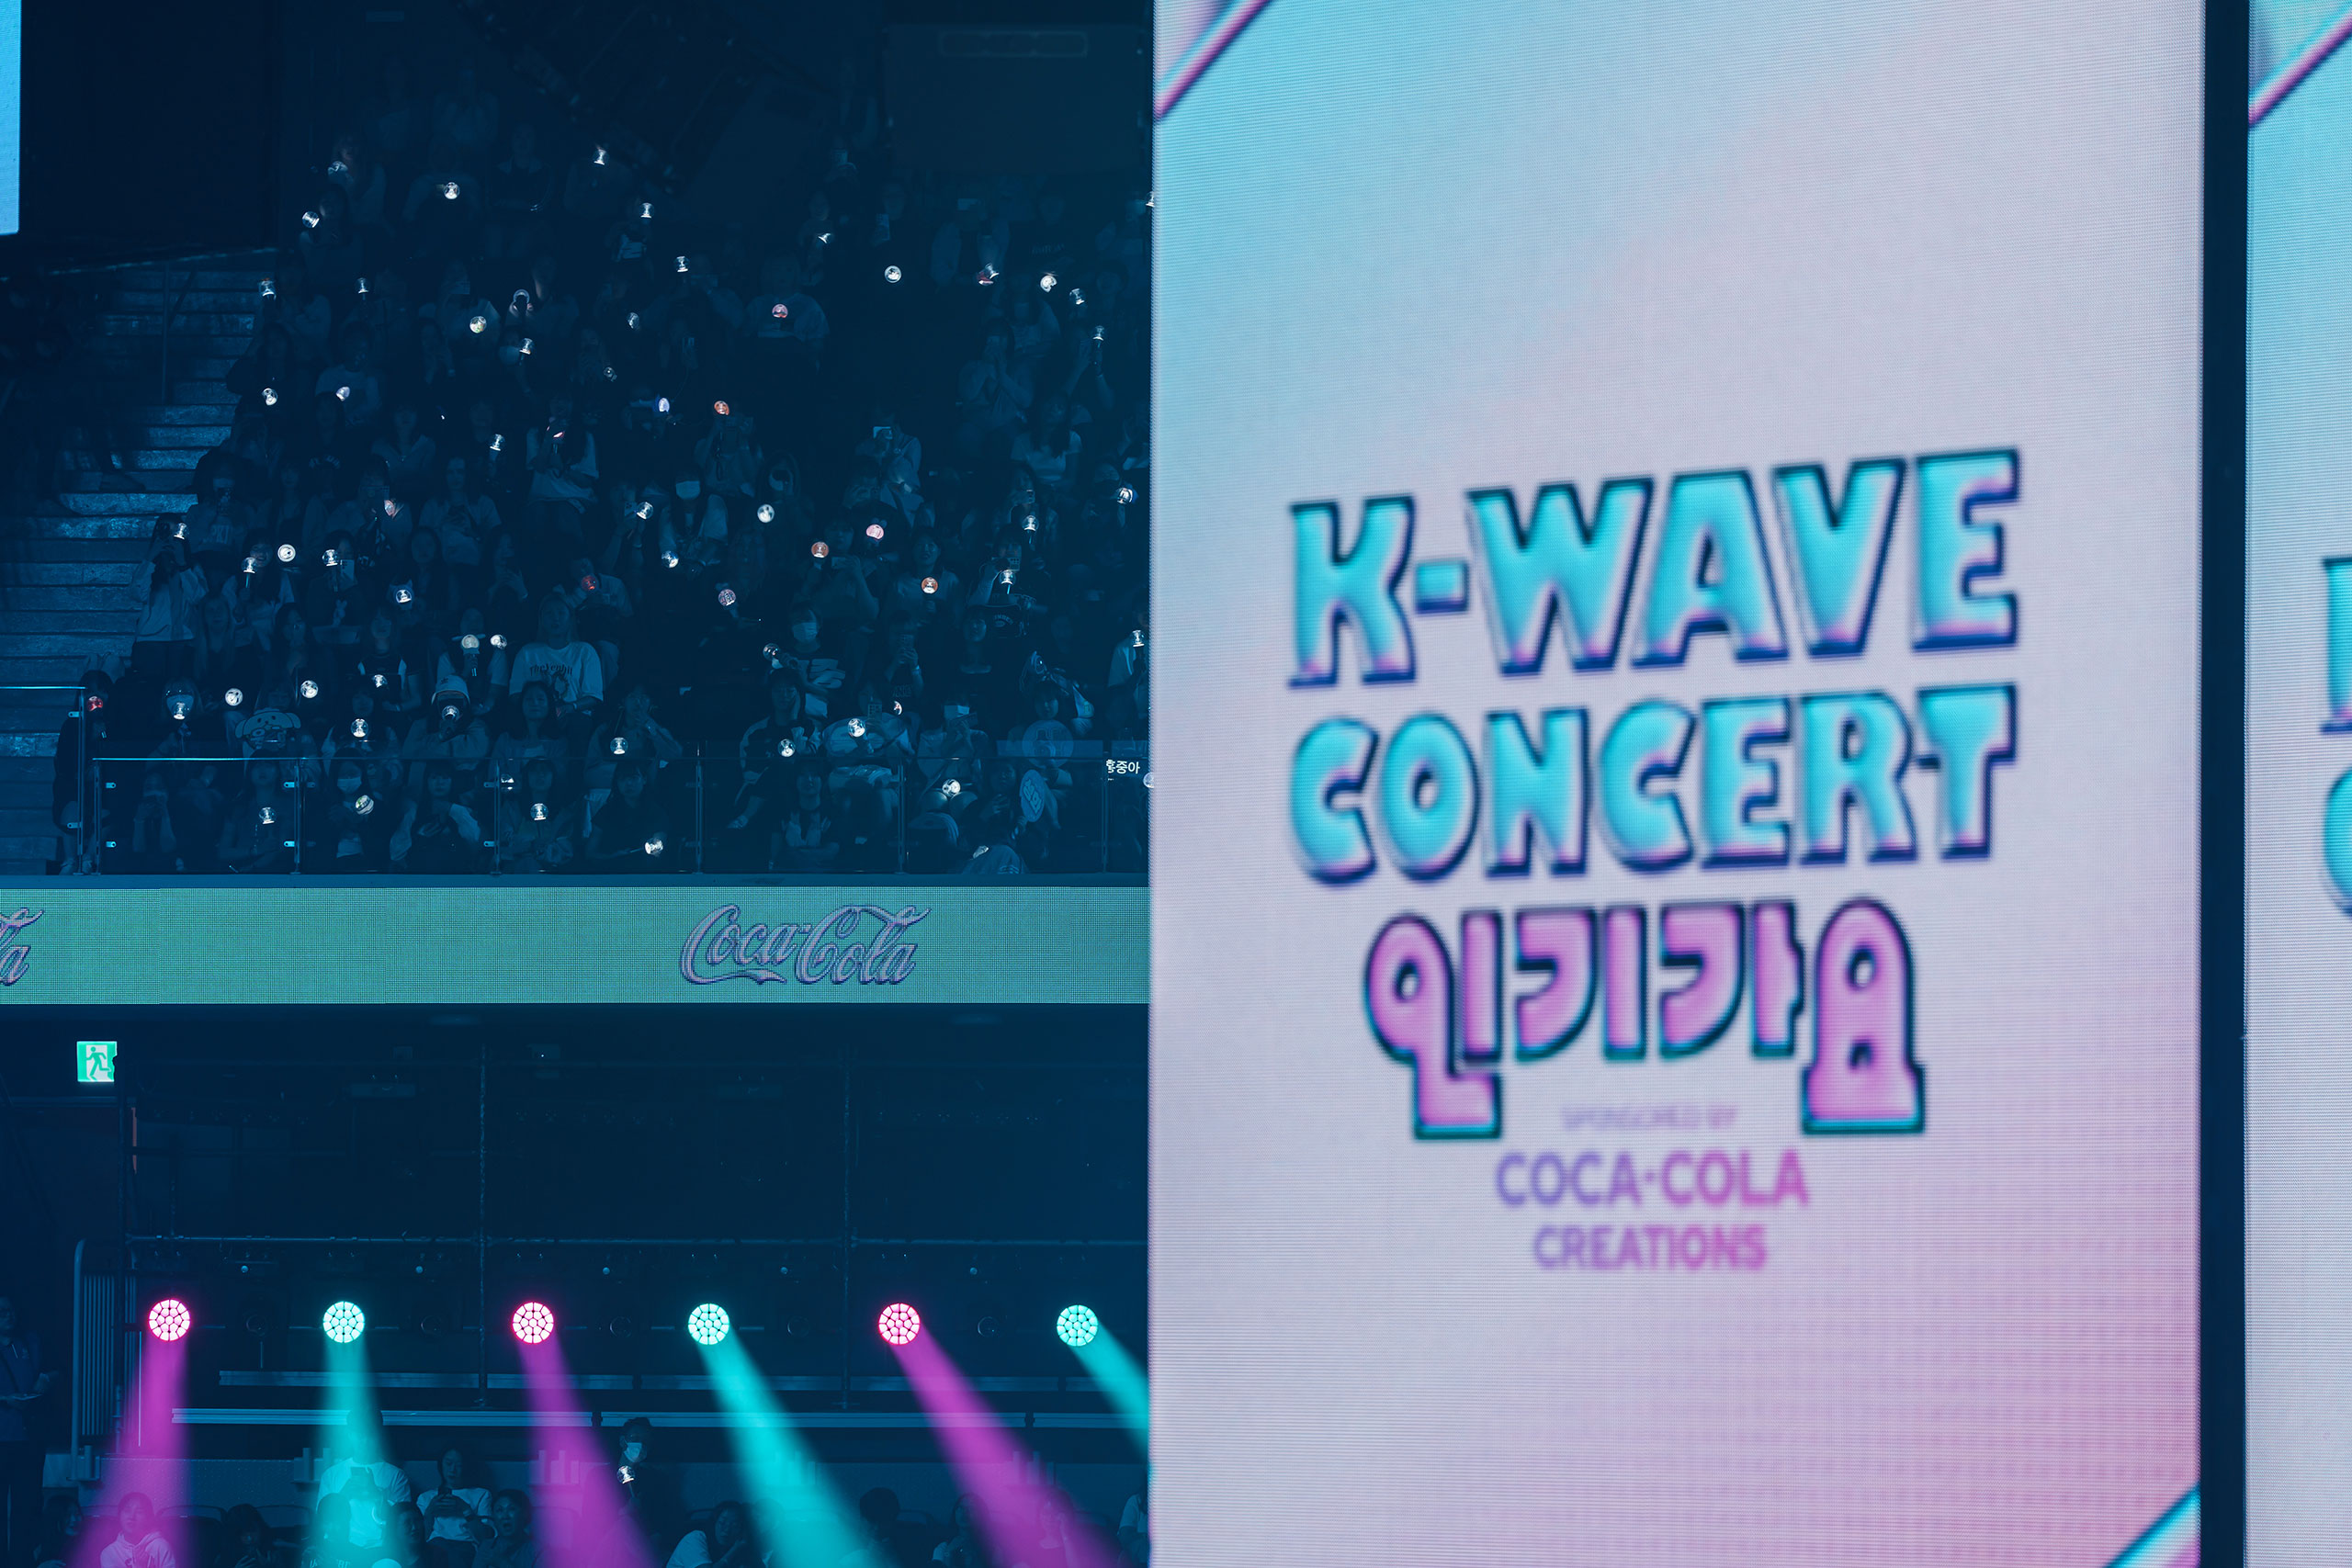 응원봉을 들고 있는 팬들의 모습과 K-Wave 콘서트 <인기가요>의 대표 이미지가 함께 위치해있다